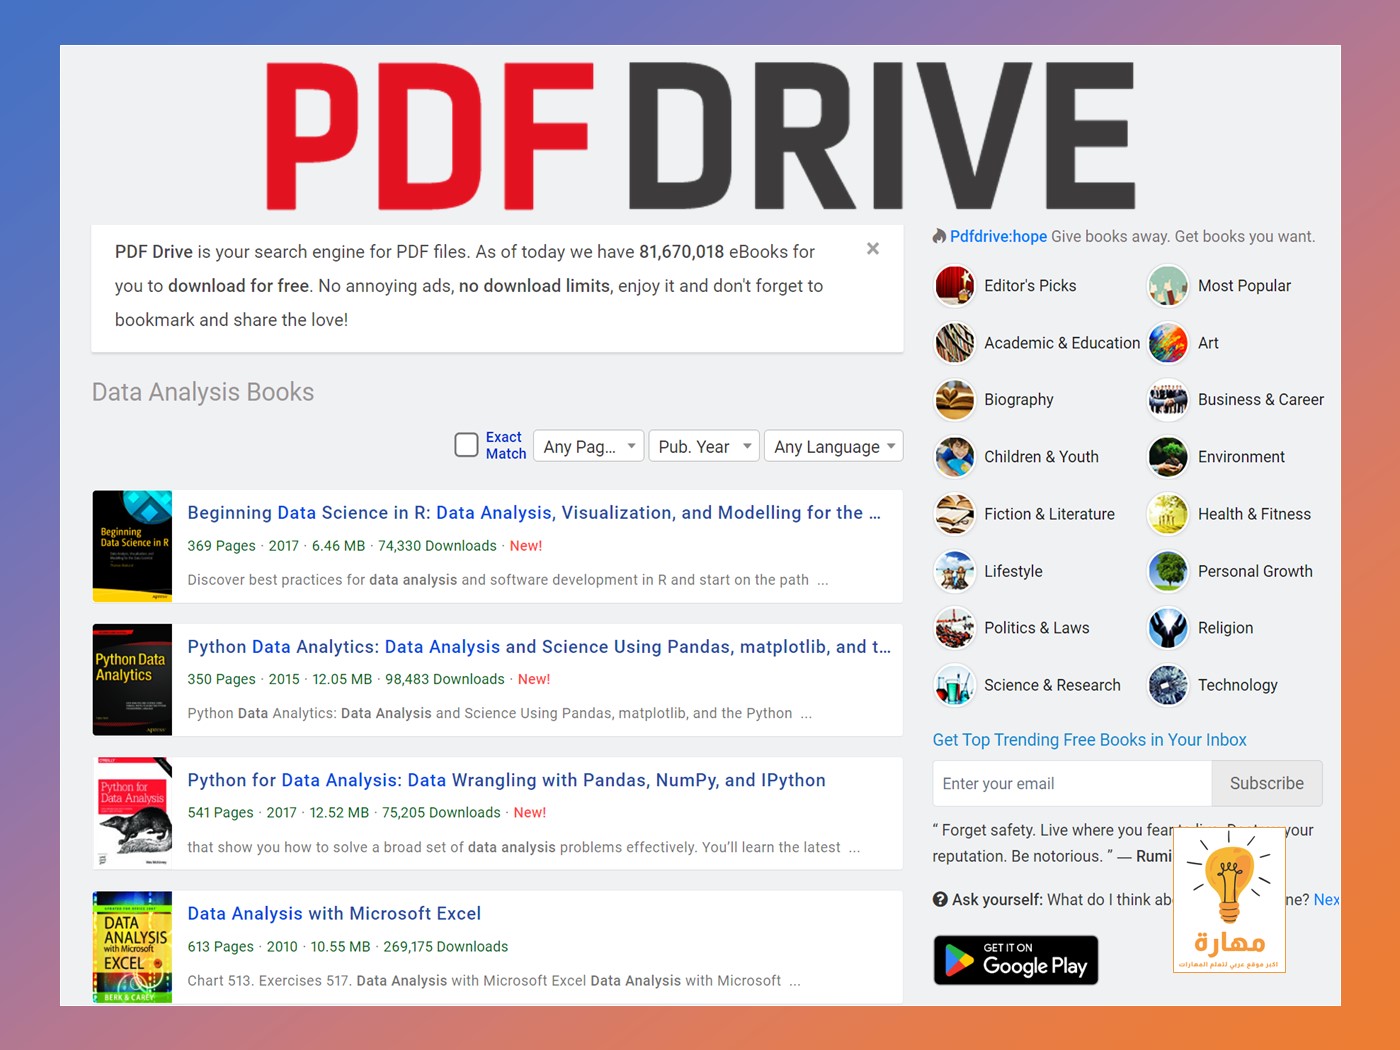 حمل اكثر من 80 مليون كتاب من موقع PDF Drive مجانا